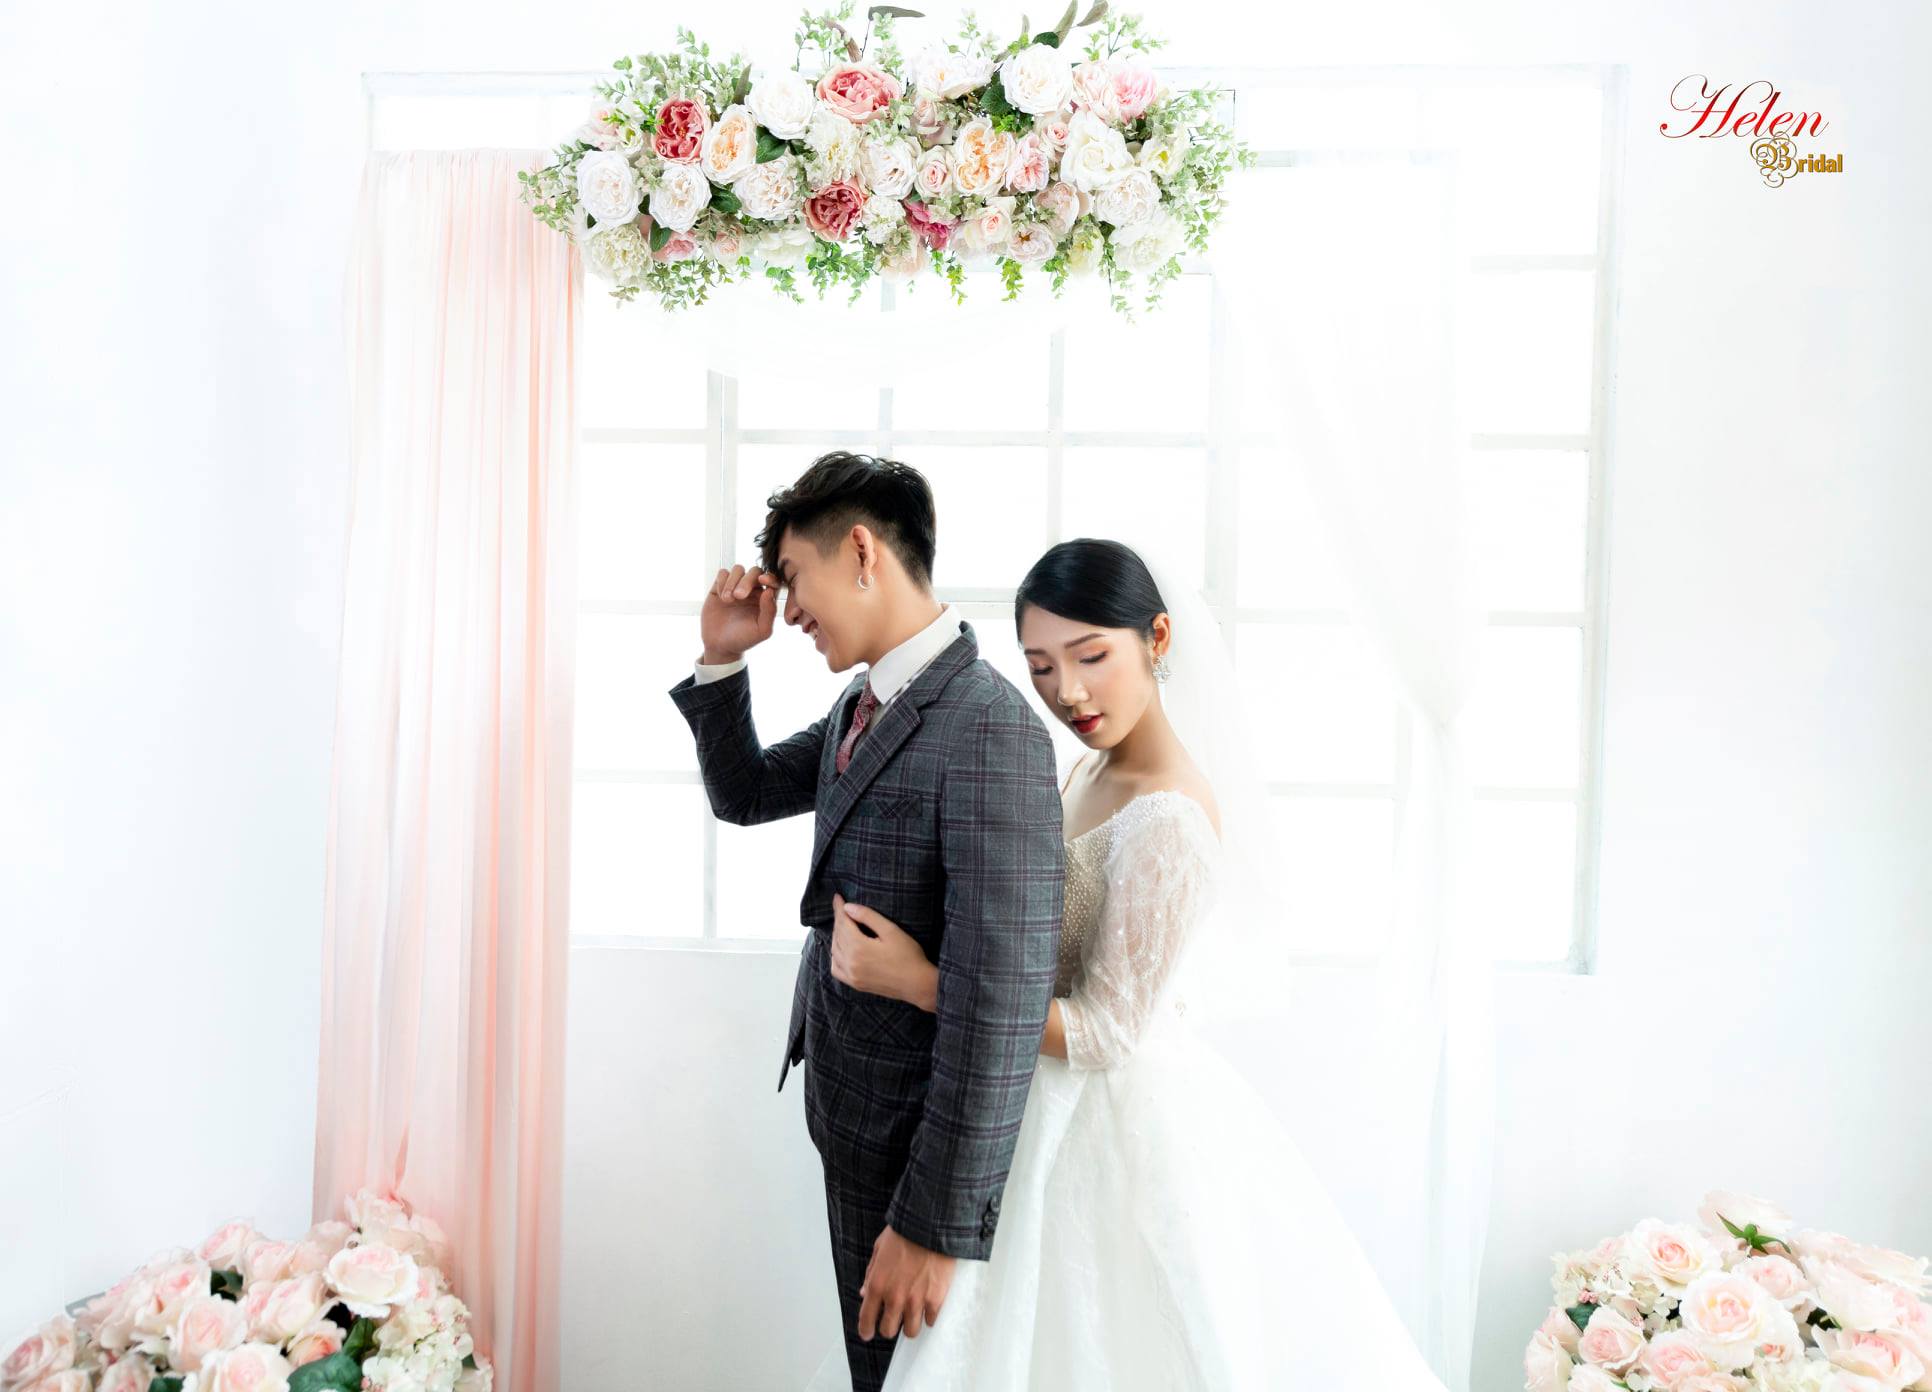 Cách ghép phông nền cho ảnh cưới cơ bản | Aphoto